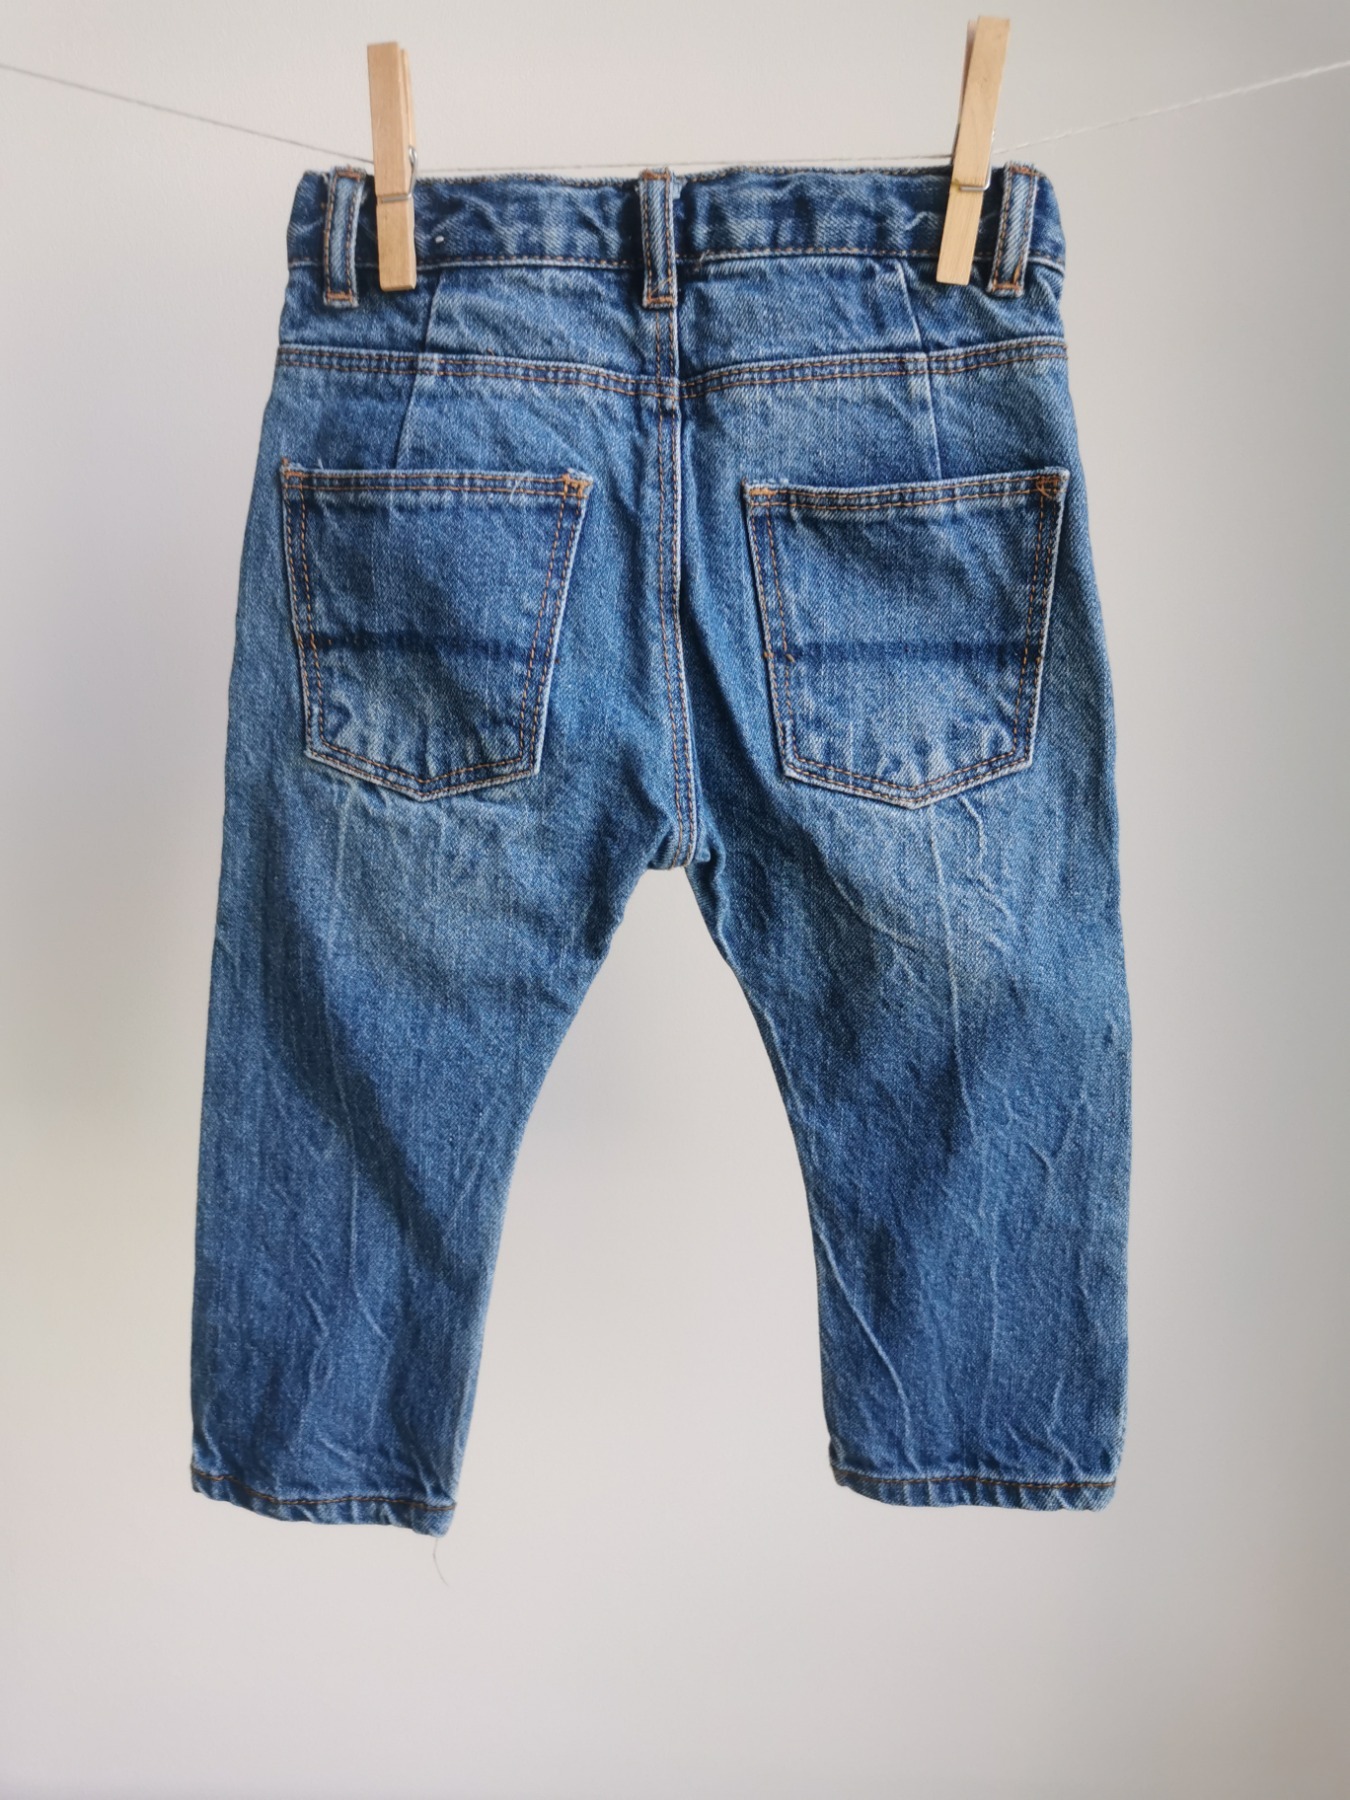 Jeans mit Nahtdetails - Größe 86 4